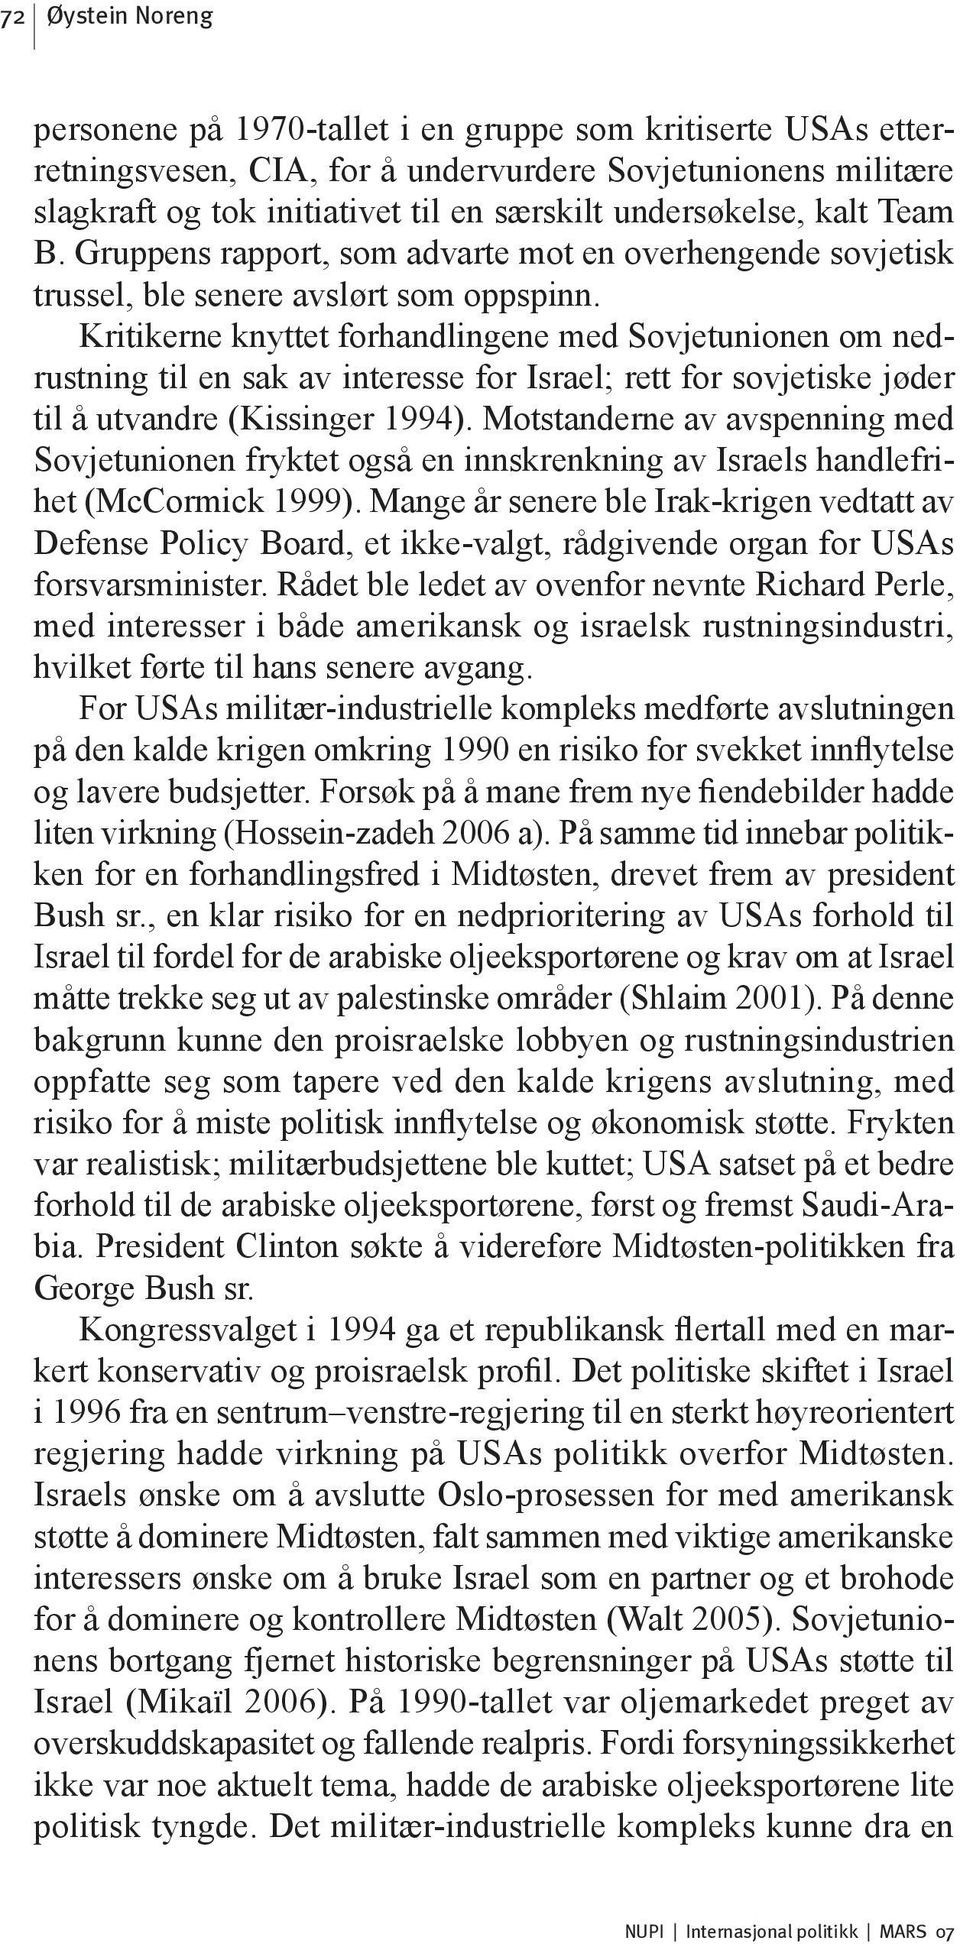 Kritikerne knyttet forhandlingene med Sovjetunionen om nedrustning til en sak av interesse for Israel; rett for sovjetiske jøder til å utvandre (Kissinger 1994).